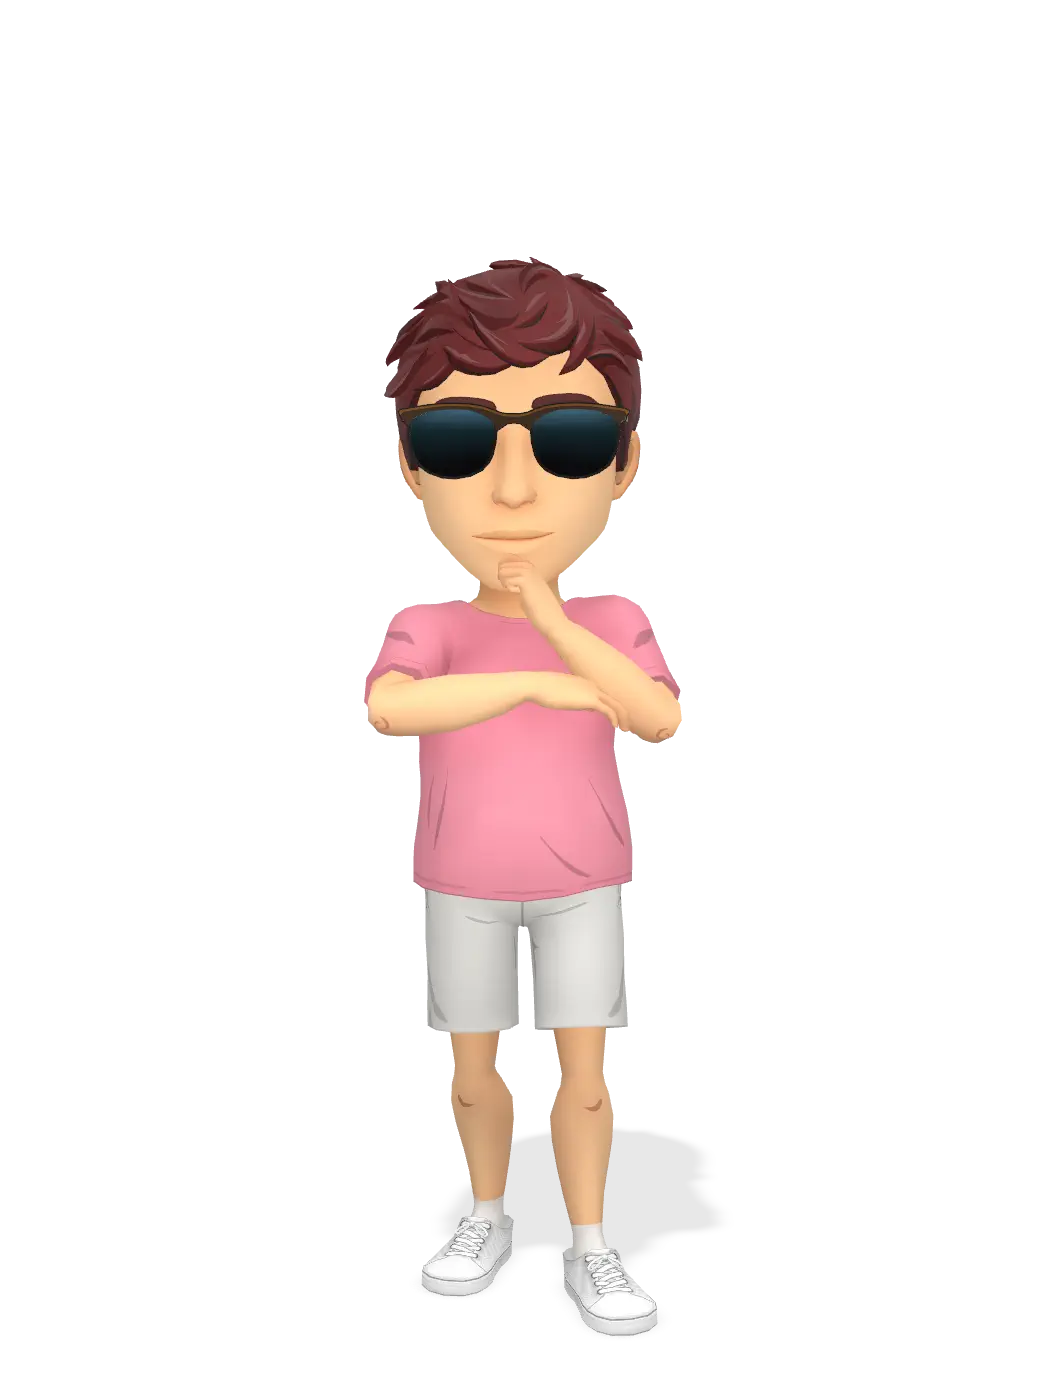 3D Bitmoji for jmeehan055 avatar